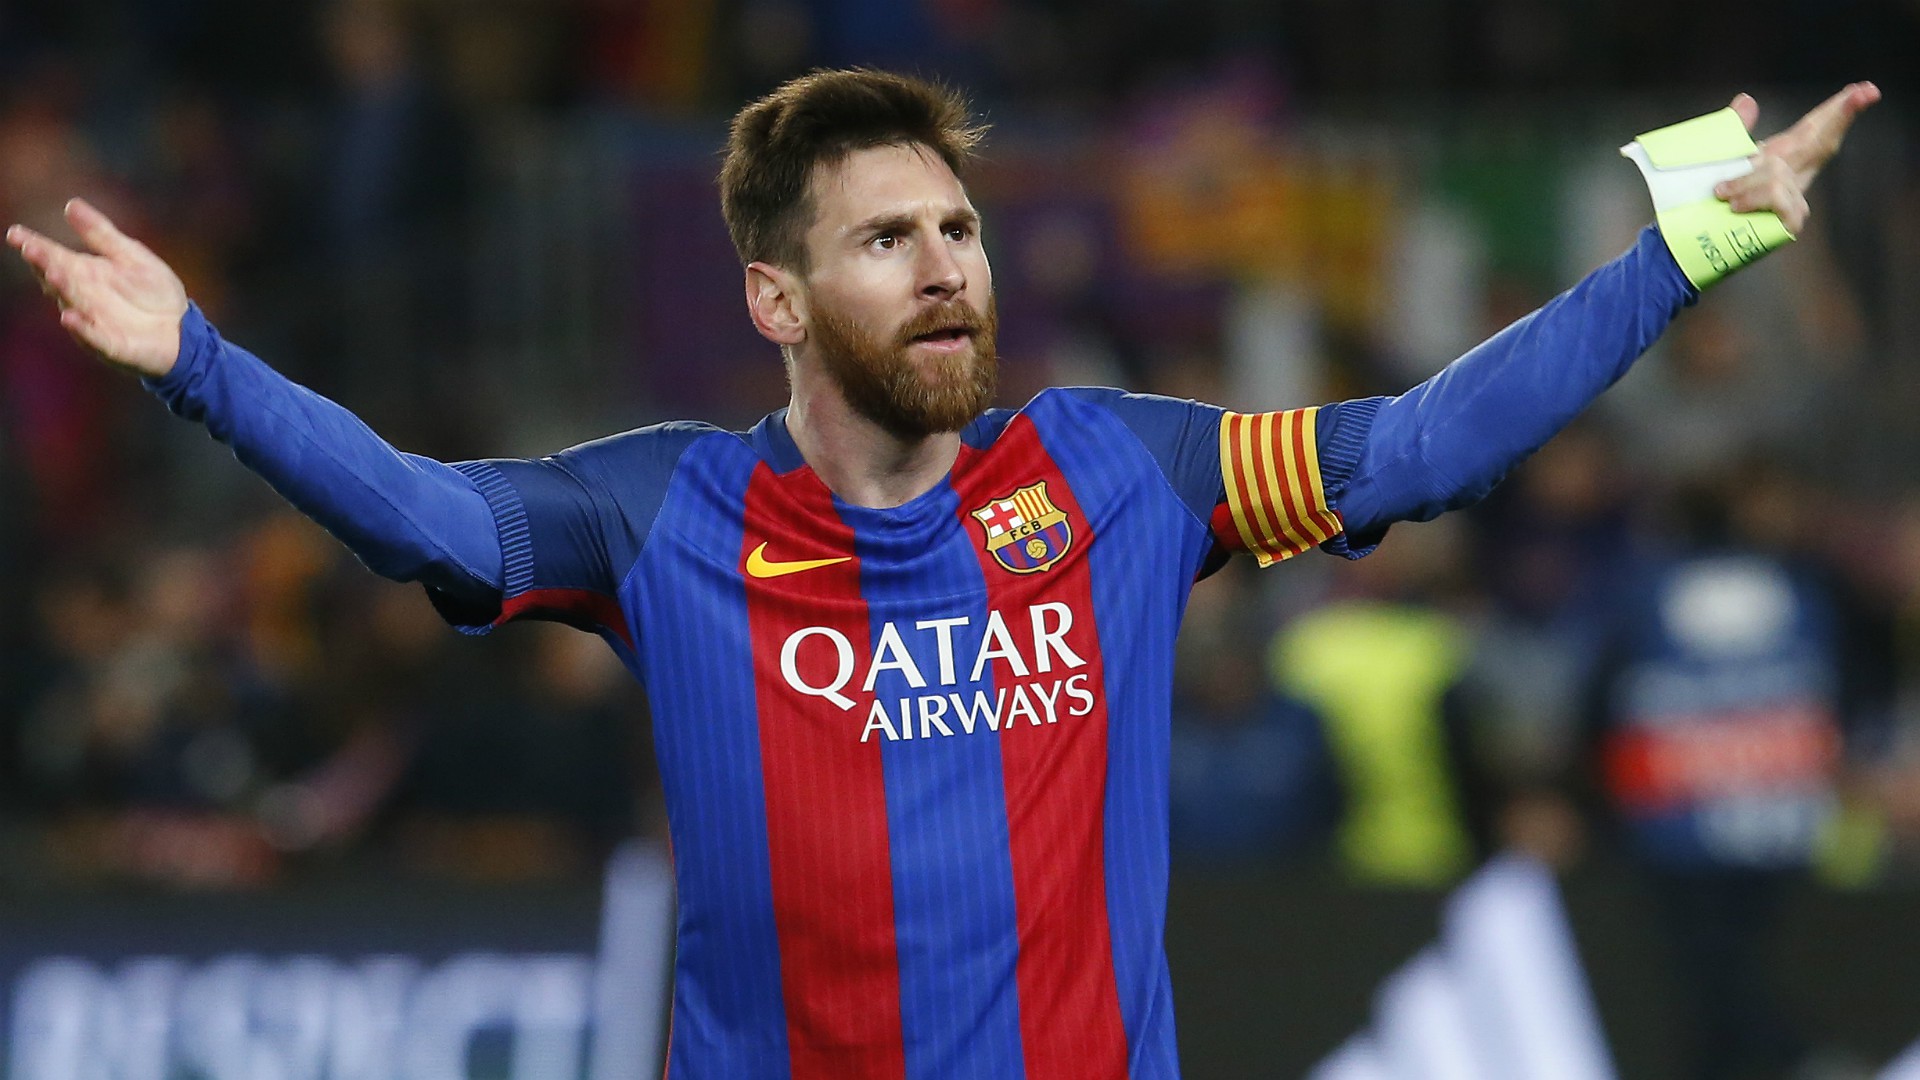 Từ vị trí thứ 4 Messi sẽ phá kỷ lục đeo băng thủ quân Barca? - Ảnh 3.